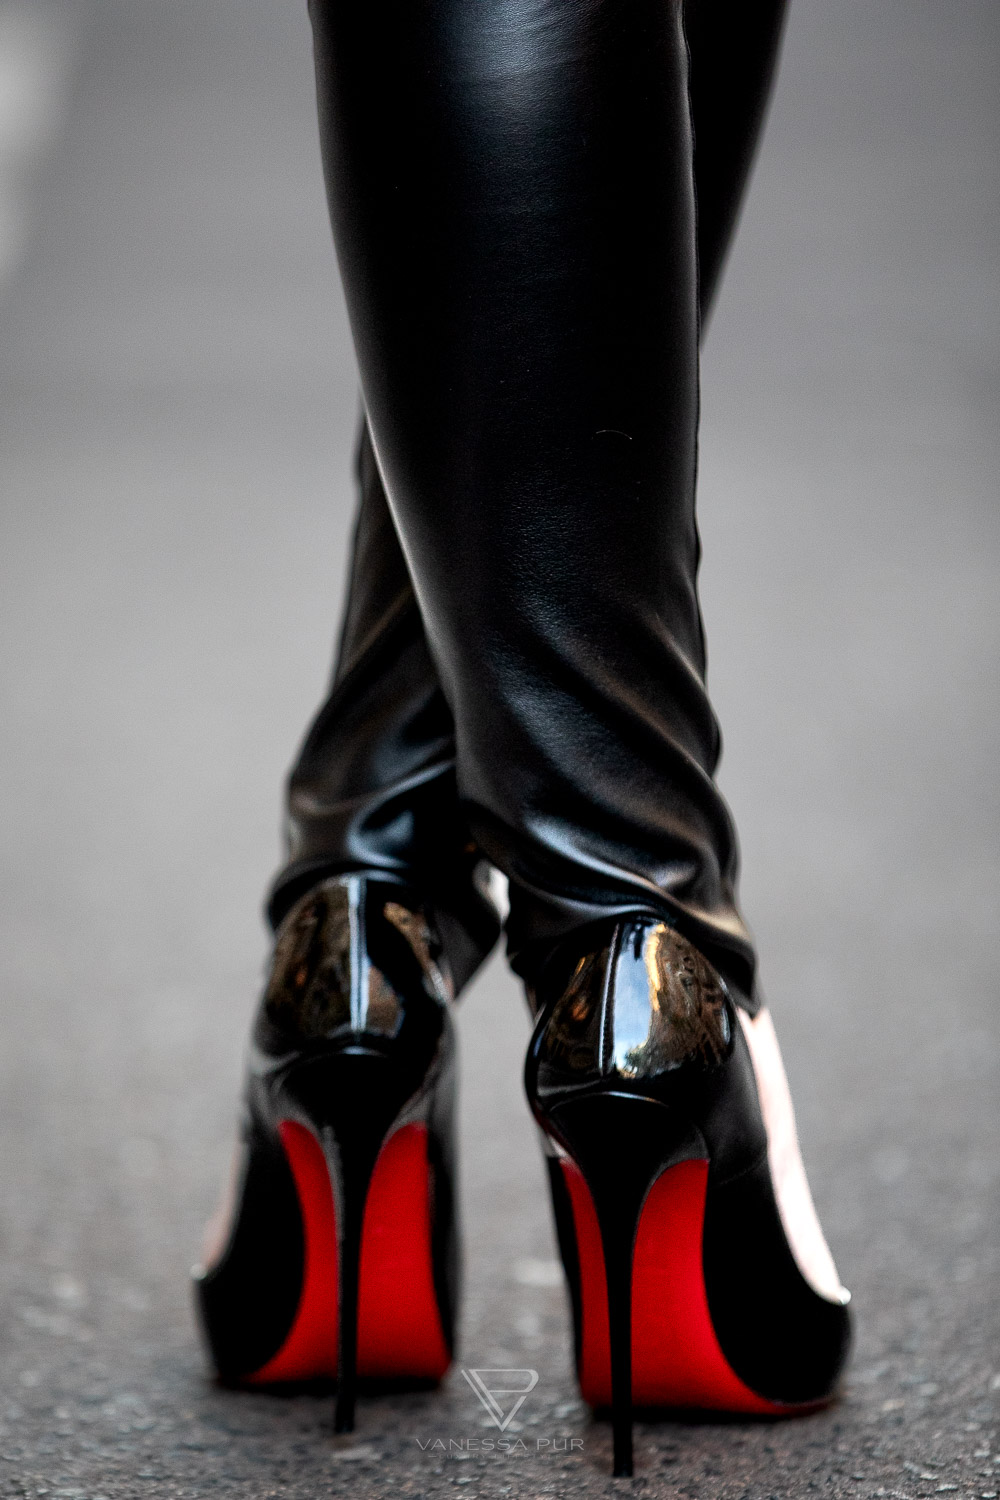 Louboutin High Heels kaufen - was sollte ich vorher wissen? Fashion Blog Hamburg - Designer Pumps Christian Louboutin - Modebloggerin und Luxusblog Vanessa Pur 
 - VANESSA PUR - YouTube Channel - Patreon Girl - Instagram - Feminine elegant fashion looks always with high heels